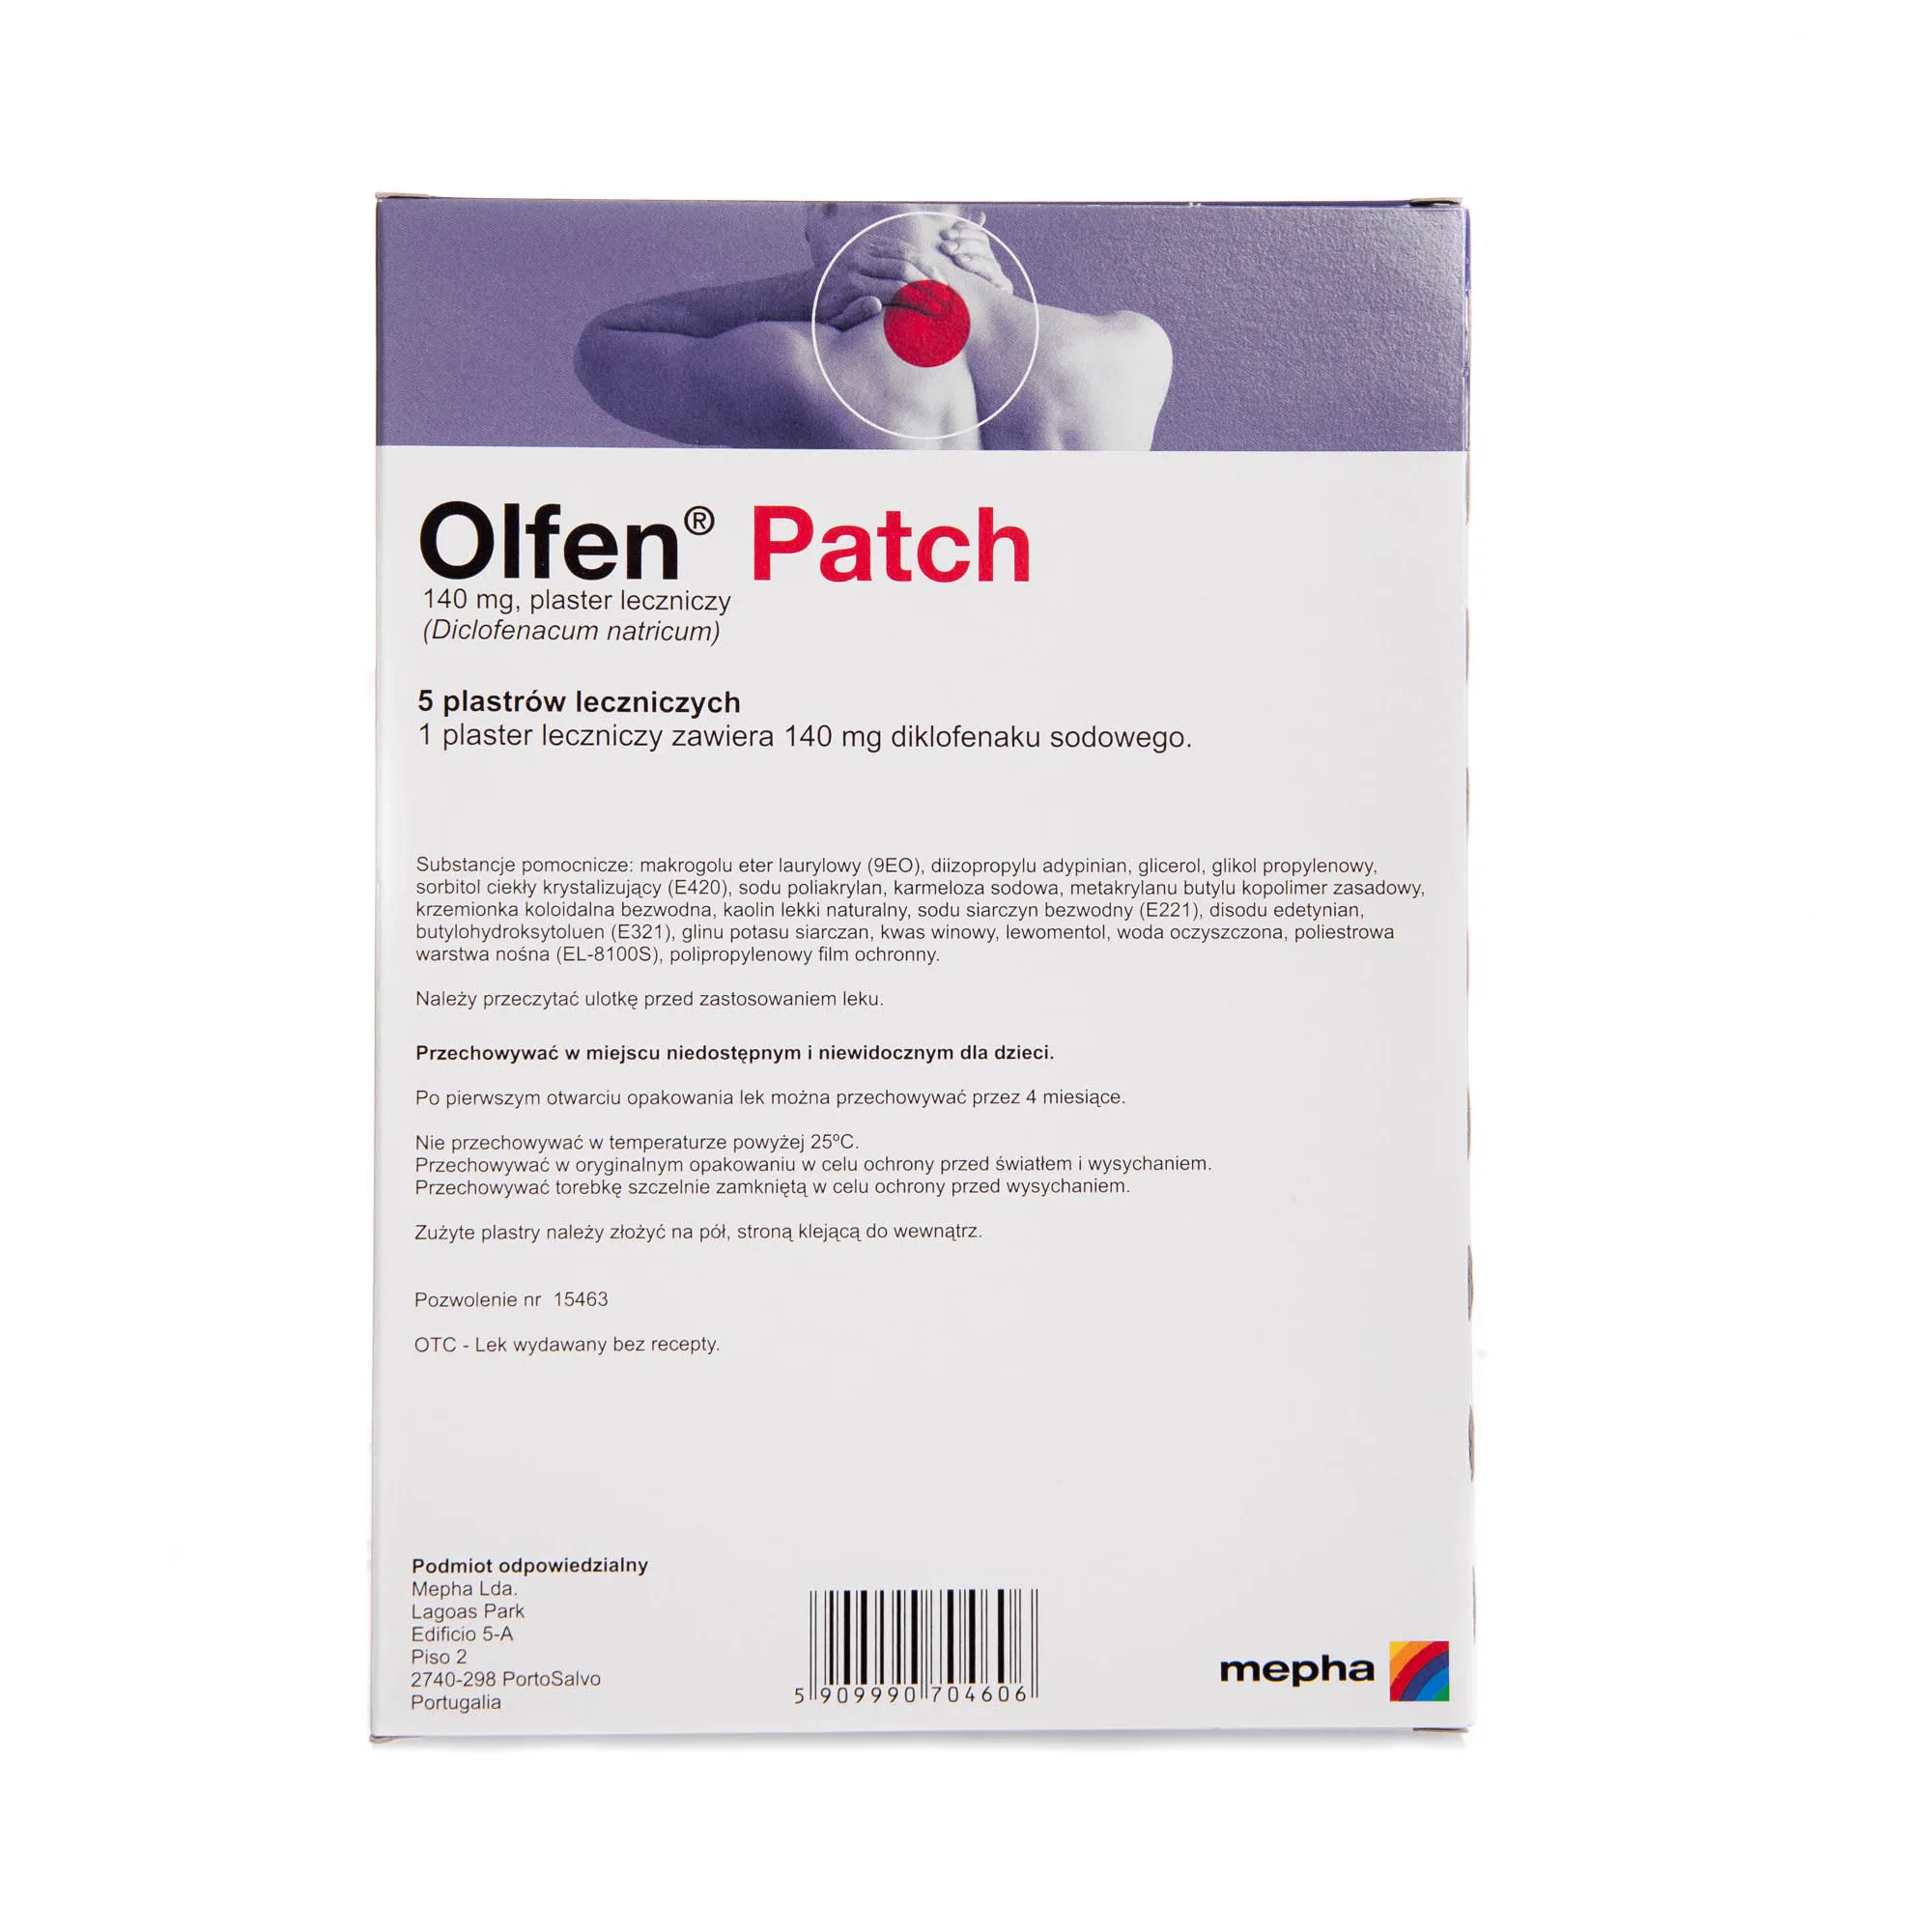 Olfen Patch 140 mg, plaster leczniczy, 5 plastrów 